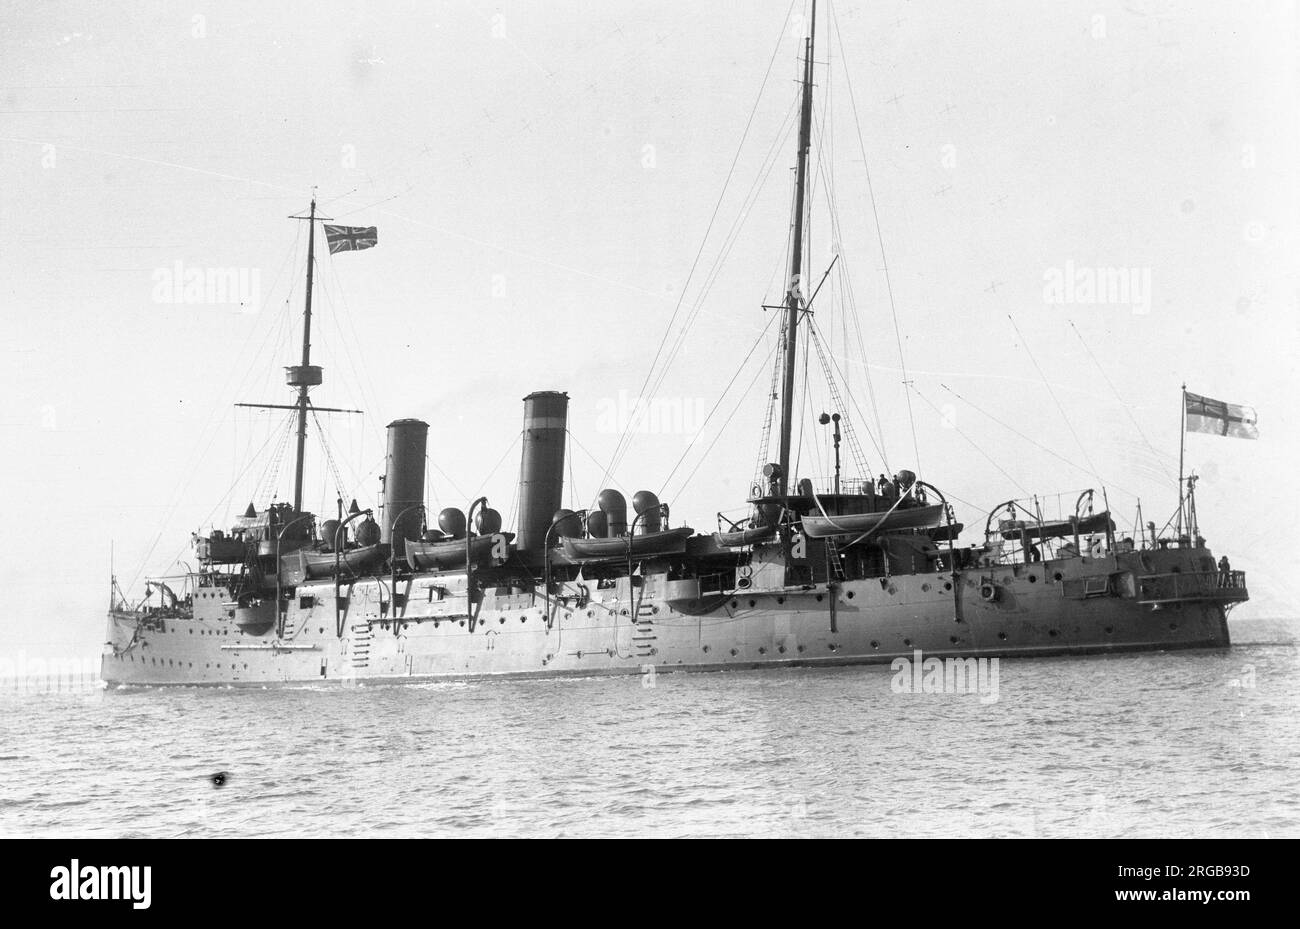 Royal Navy - HMS Bonaventure, croiseur de deuxième classe de la Royal Navy, commandé dans le cadre de la classe Astraea de huit navires en vertu de la loi sur la défense navale de 1889. Il a été commissionné pour servir en 1895, et a survécu pour servir pendant la première Guerre mondiale. Bonaventure sert dans l'escadron du Pacifique, y compris lors de la 3e guerre de Chine, sous le commandement du capitaine Robert Montgomerie RN. Il retourne à Devonport en mai 1906, pour être payé, mais est envoyé au chantier naval Haulbowline Dockyard, Cork, en Irlande pour être converti en navire de dépôt pour sous-marins. Ce travail a été achevé en avril 1907 et elle conti Banque D'Images